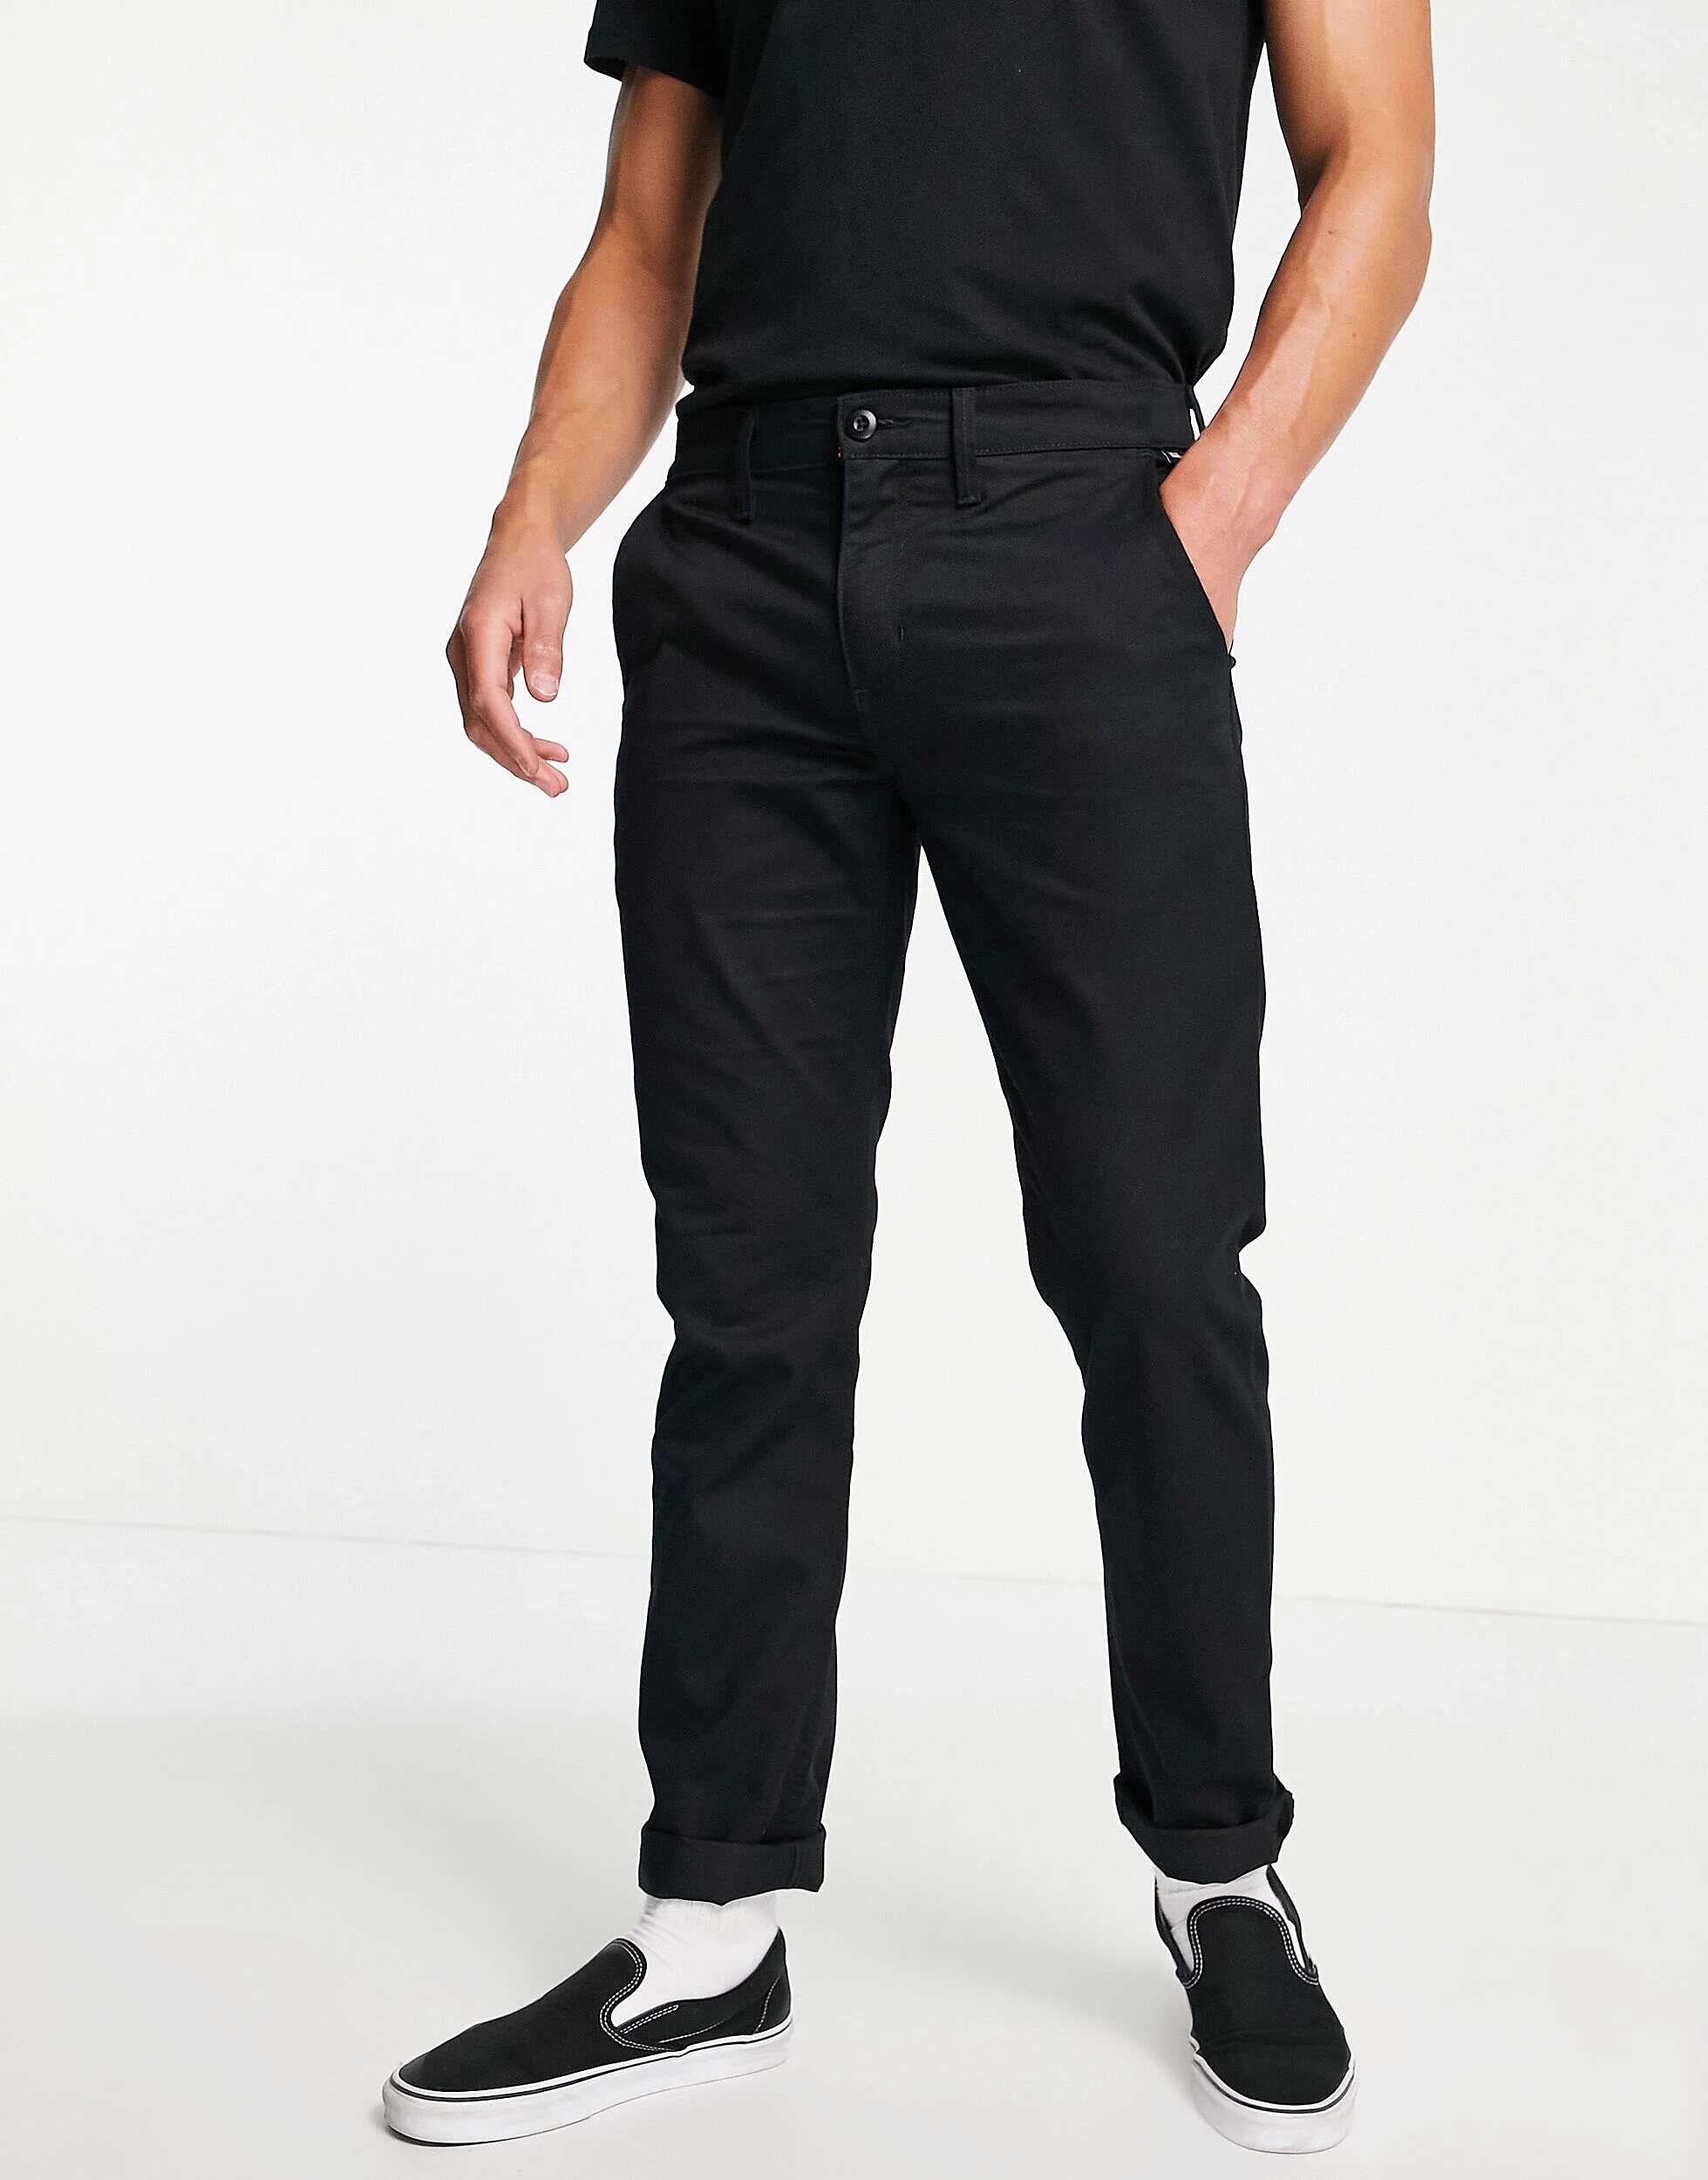 Черные брюки-чиносы узкого кроя Vans Authentic брюки чинос bianca летние повседневный стиль карманы стрейч размер 40 розовый